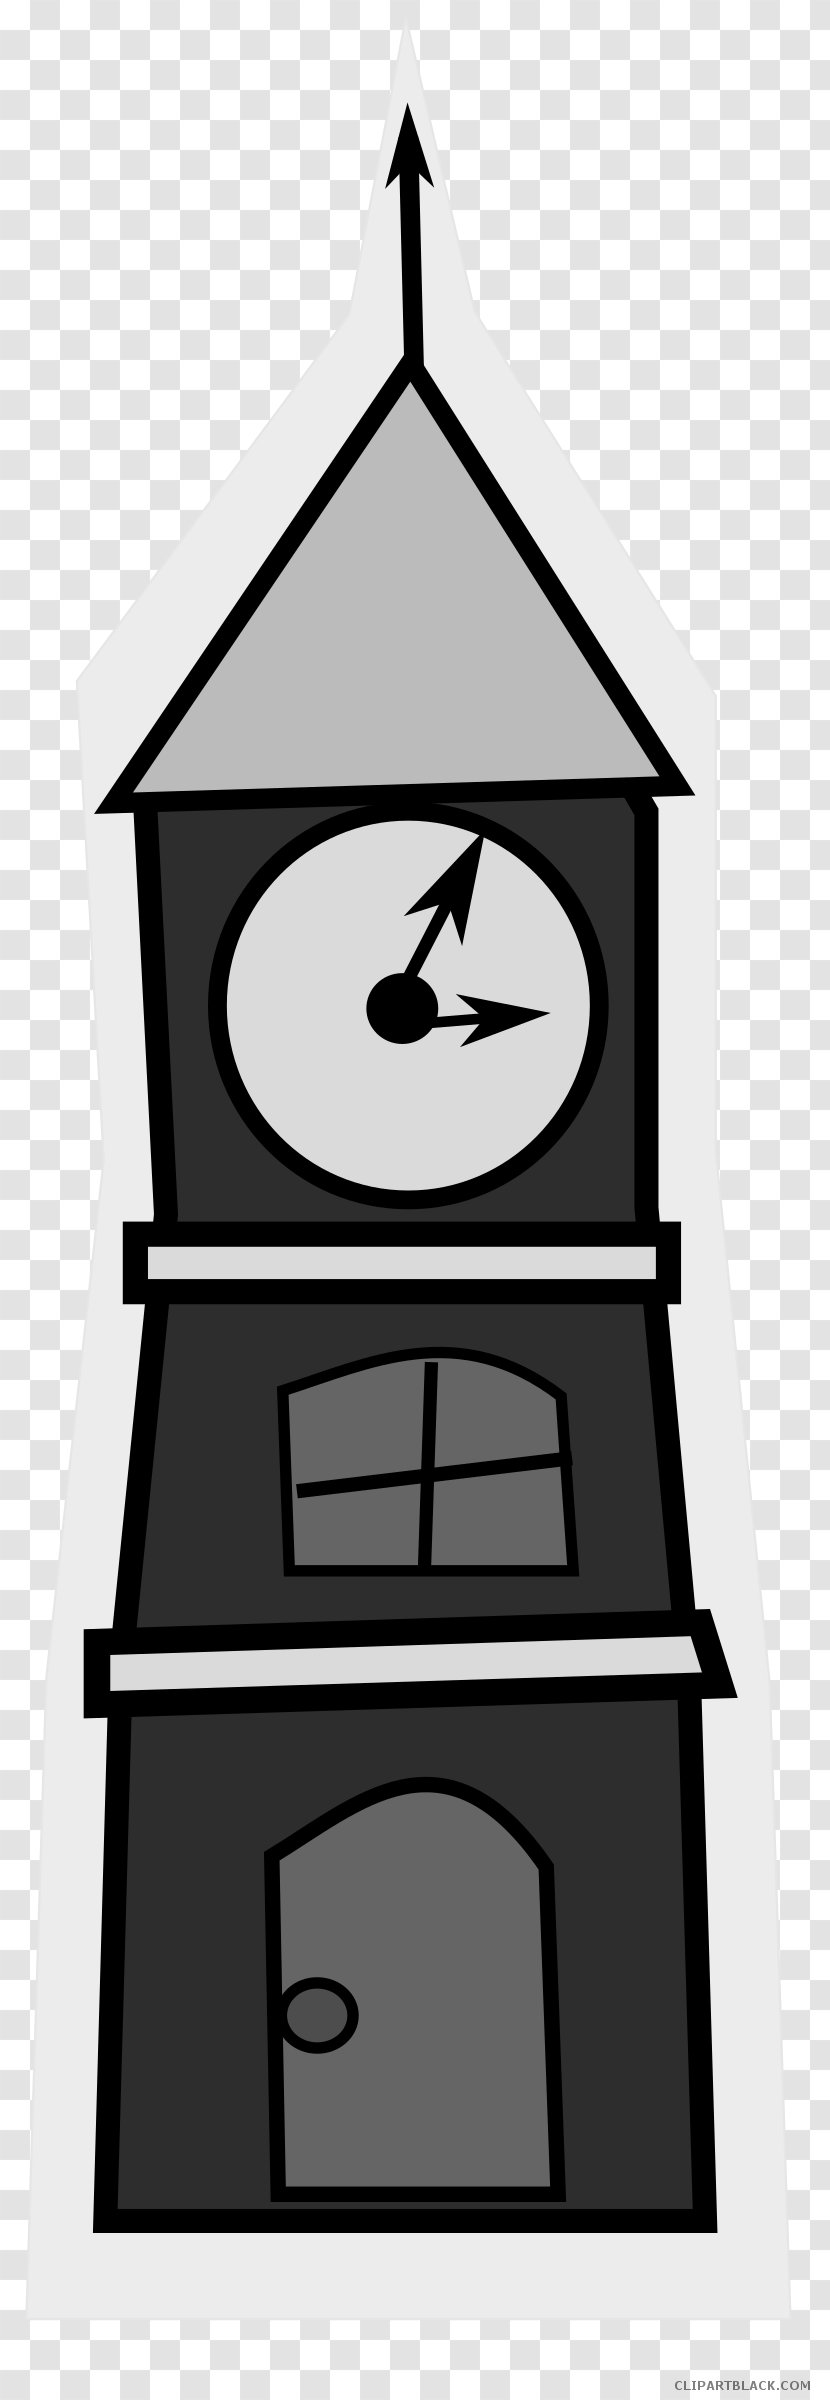 Big Ben Clip Art Clock Tower Vector Graphics - Public Domain Transparent PNG